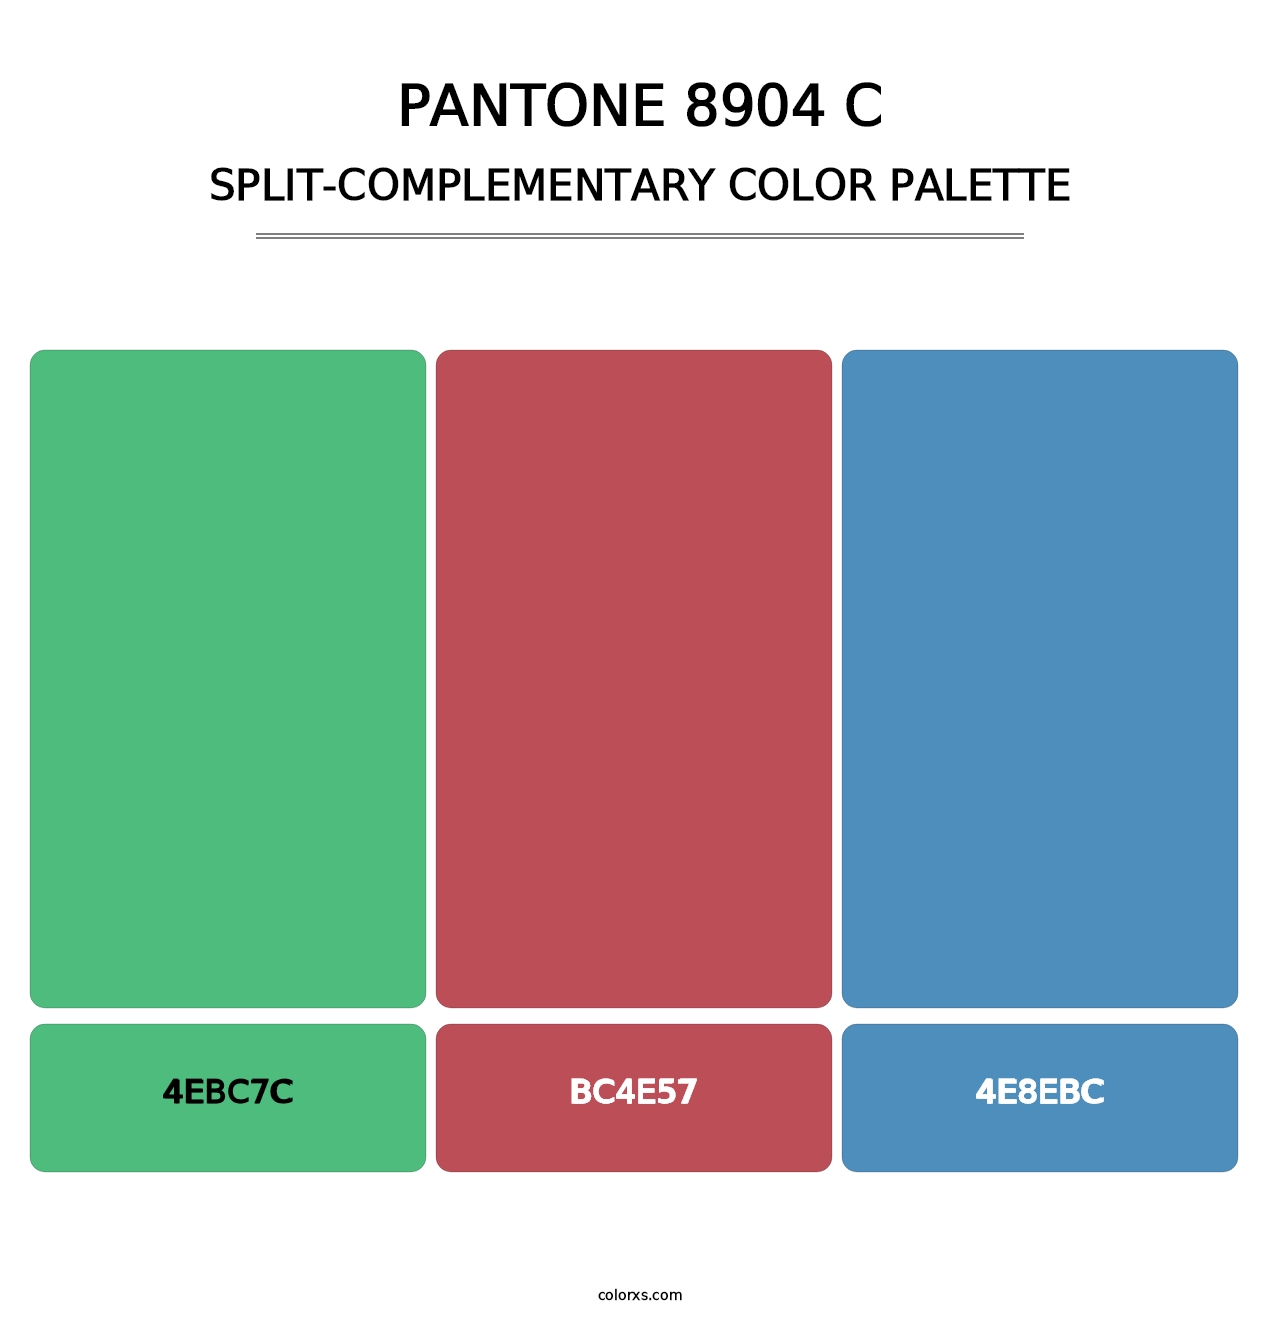 PANTONE 8904 C - Split-Complementary Color Palette